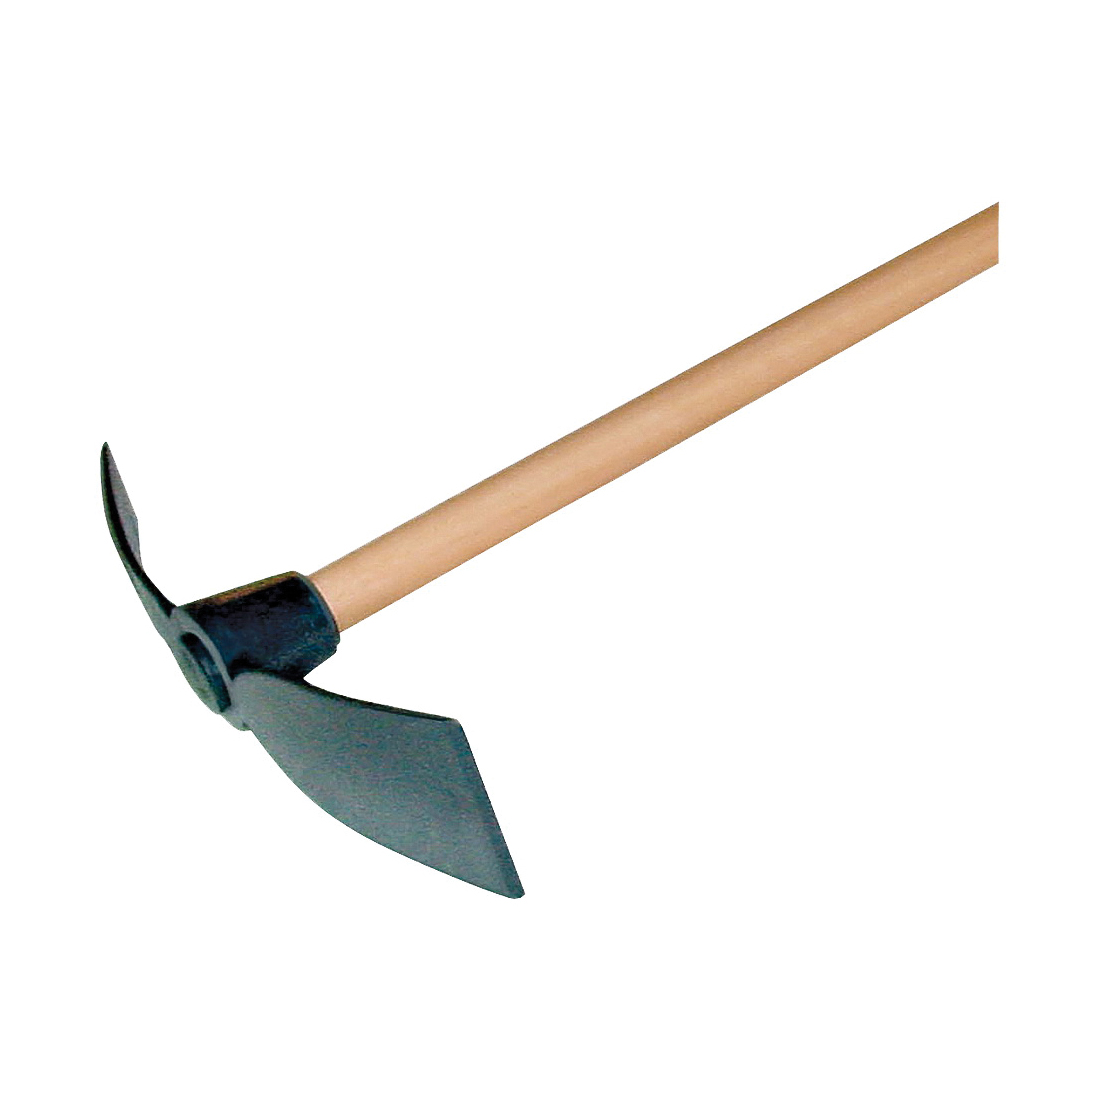 SEYMOUR 85529 Hoe Mattock, Steel Blade, Hardwood Handle